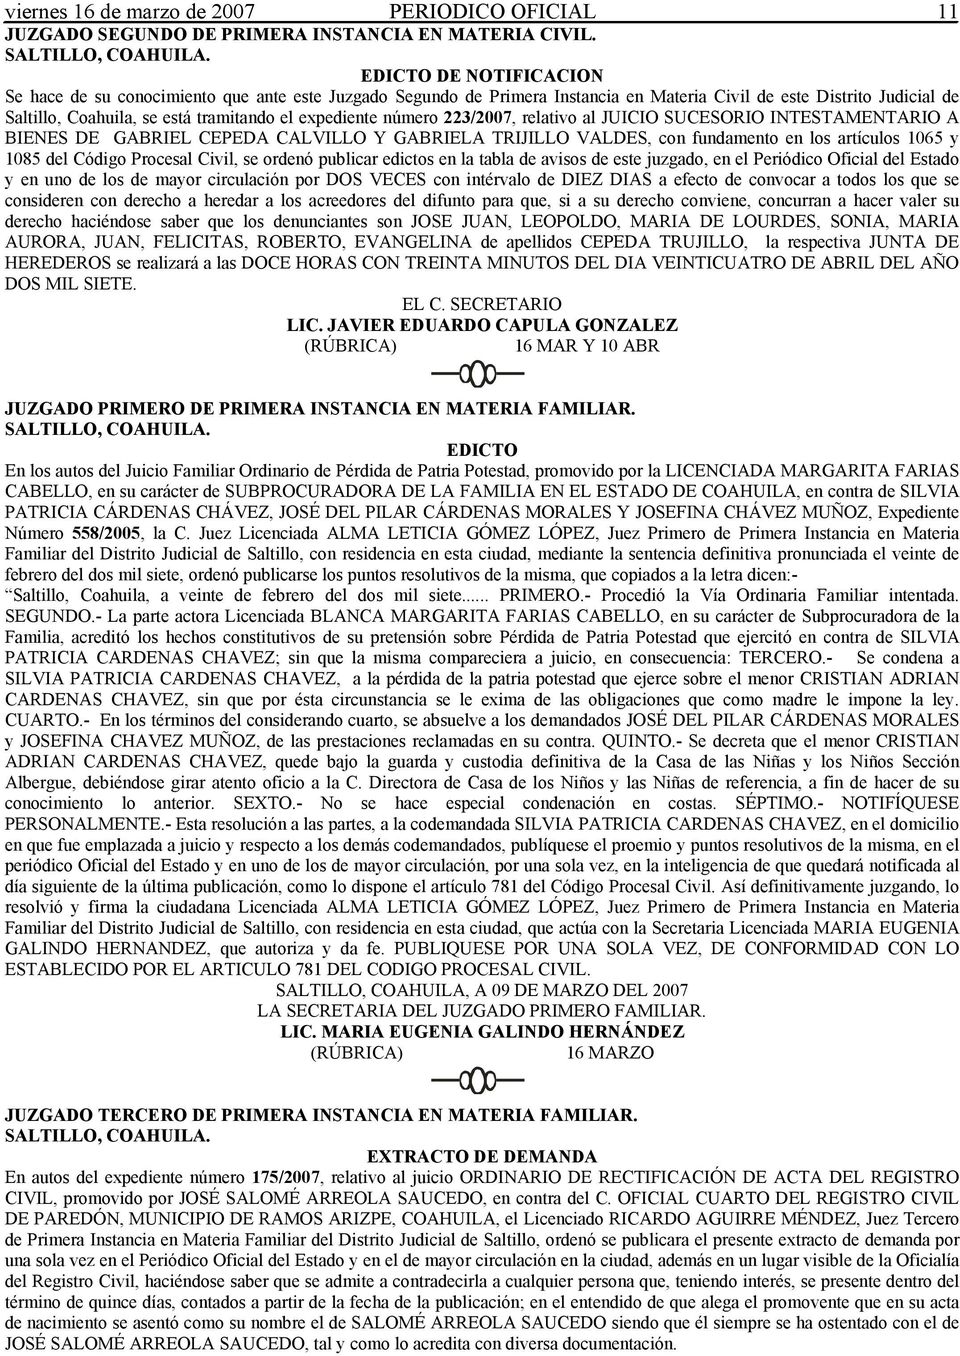 número 223/2007, relativo al JUICIO SUCESORIO INTESTAMENTARIO A BIENES DE GABRIEL CEPEDA CALVILLO Y GABRIELA TRIJILLO VALDES, con fundamento en los artículos 1065 y 1085 del Código Procesal Civil, se